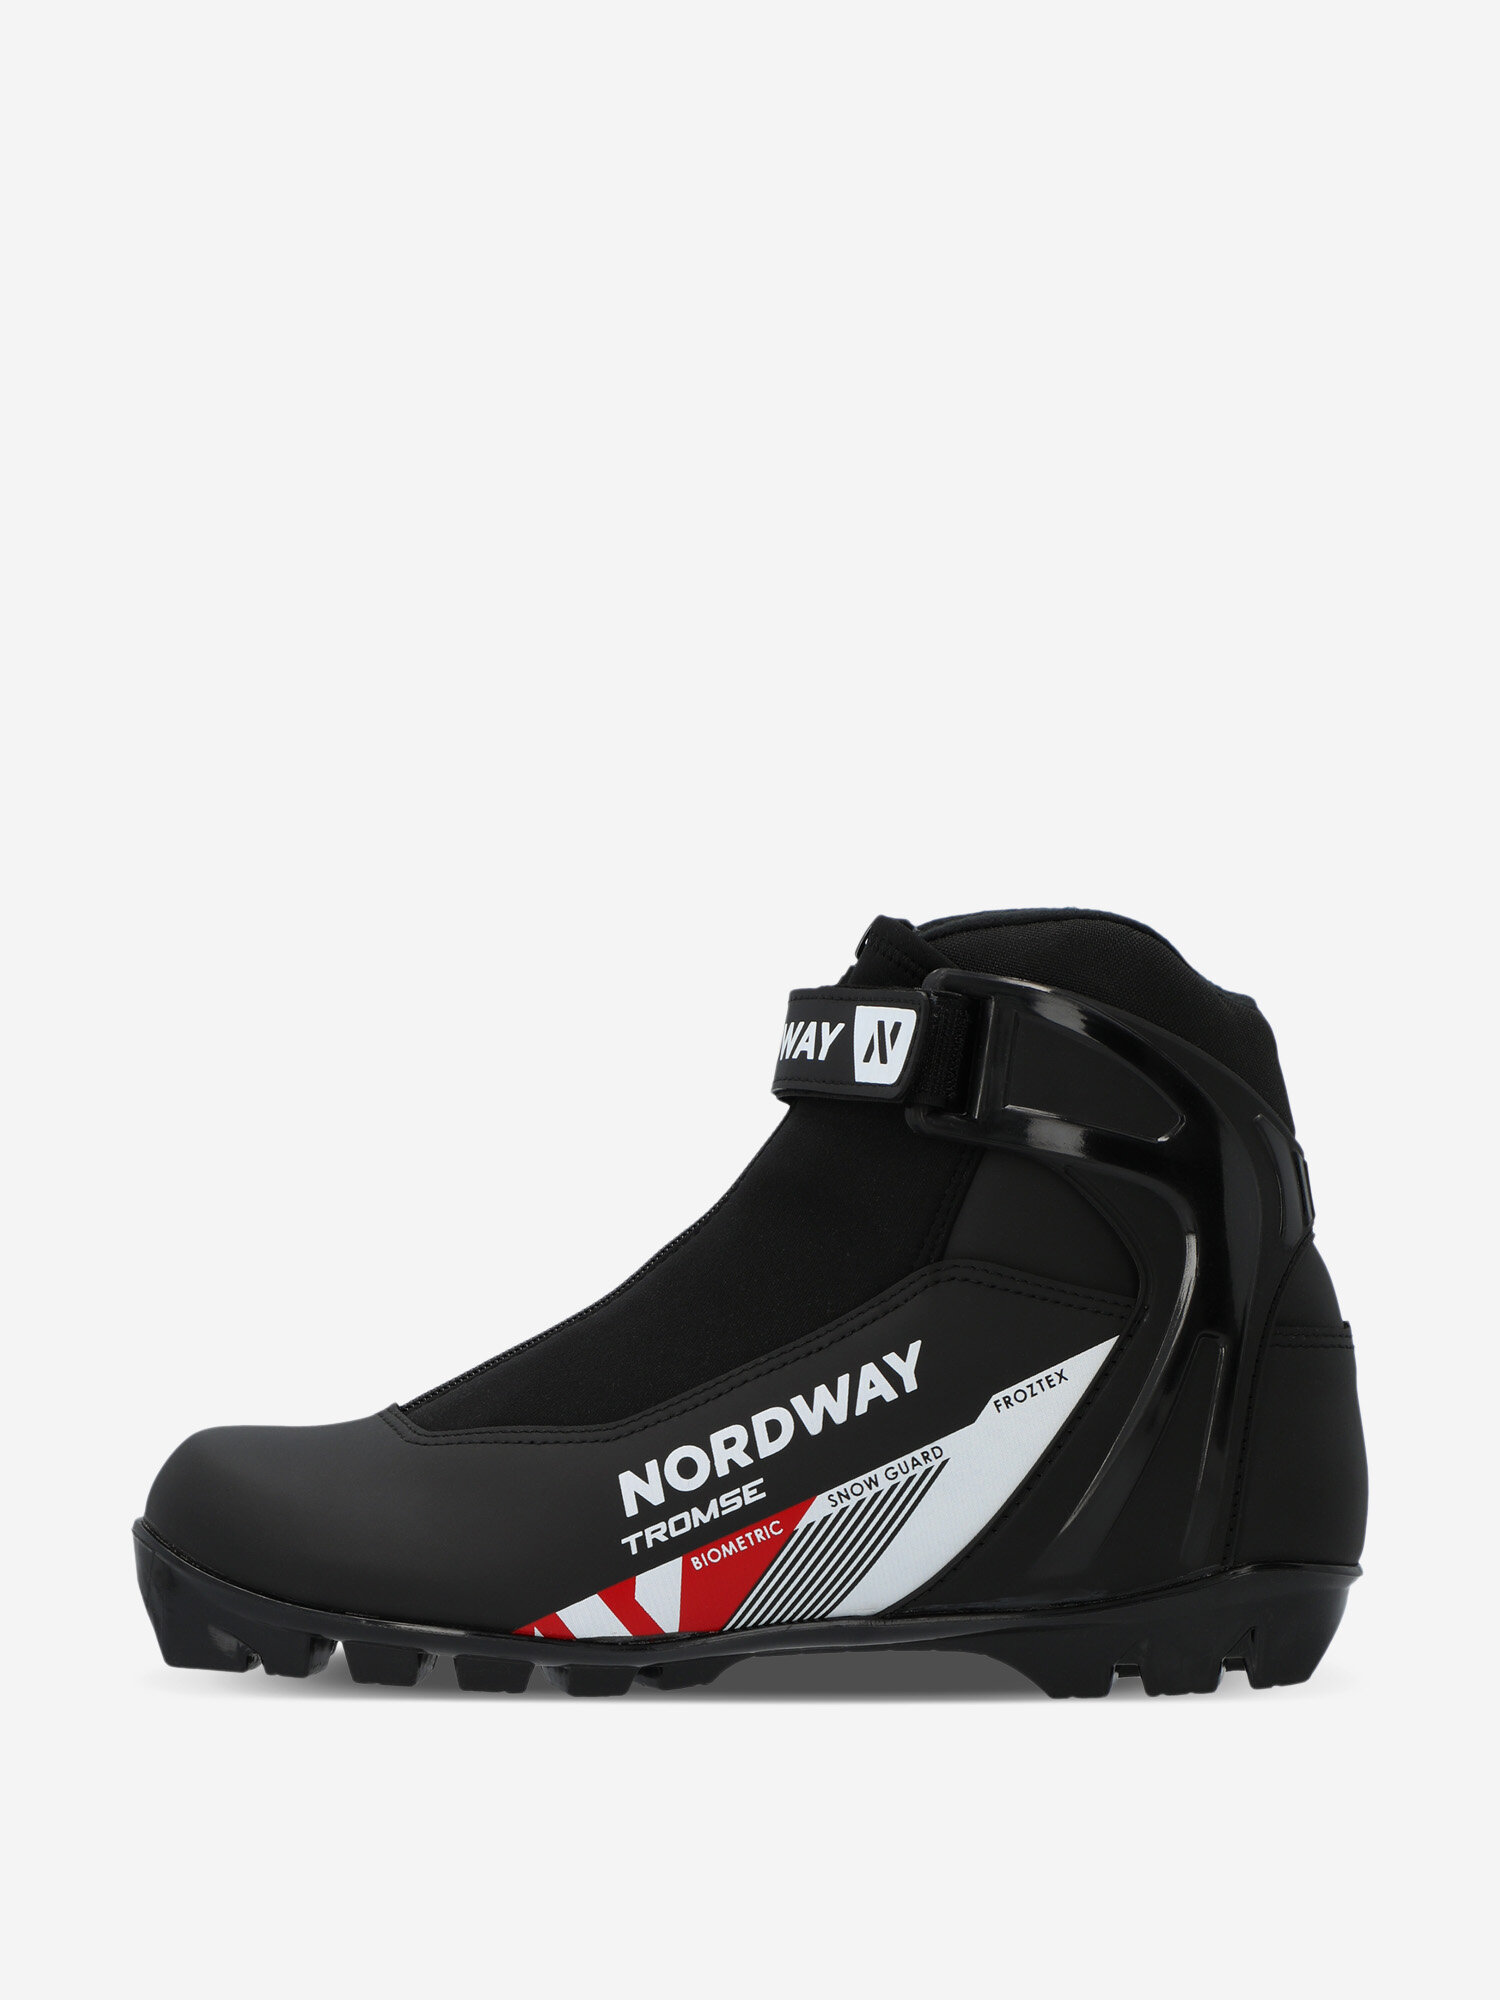 Ботинки для беговых лыж Nordway Tromse NNN Черный; RUS: 38, Ориг: 39